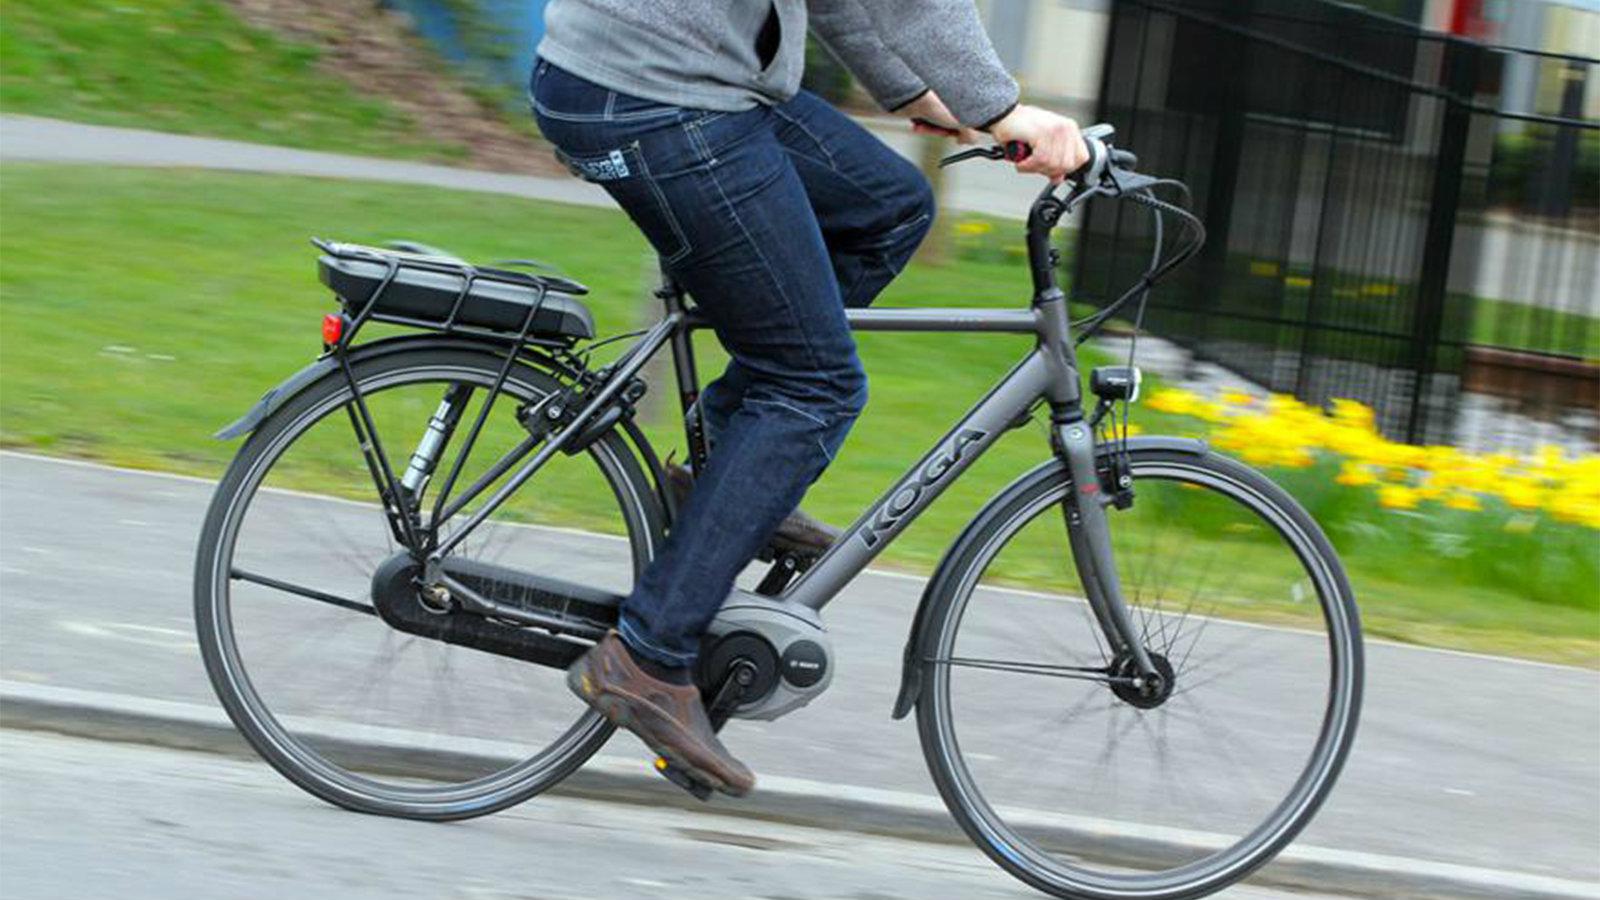 Γερμανία: «Πανικός» με διαφήμιση για τη χρήση κράνους στο ποδήλατο- Τη χαρακτηρίζουν ντροπιαστική (φωτο)